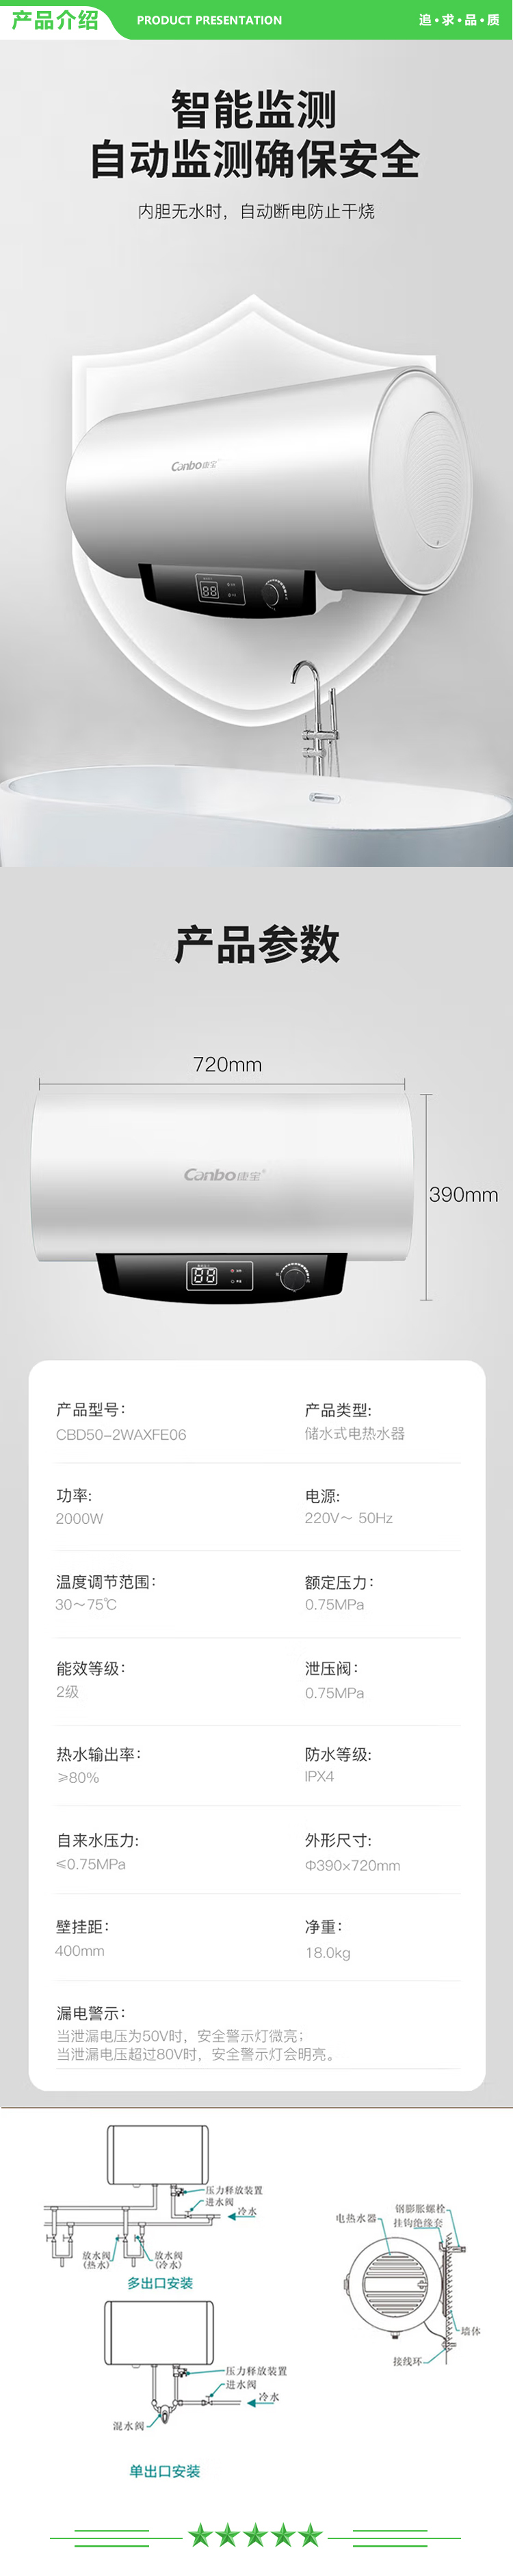 康宝 Canbo CBD50-2WAXFE06 储水式电热水器 50升大容量2000w大功率 不锈钢 家用热水器经济节能保温 .jpg